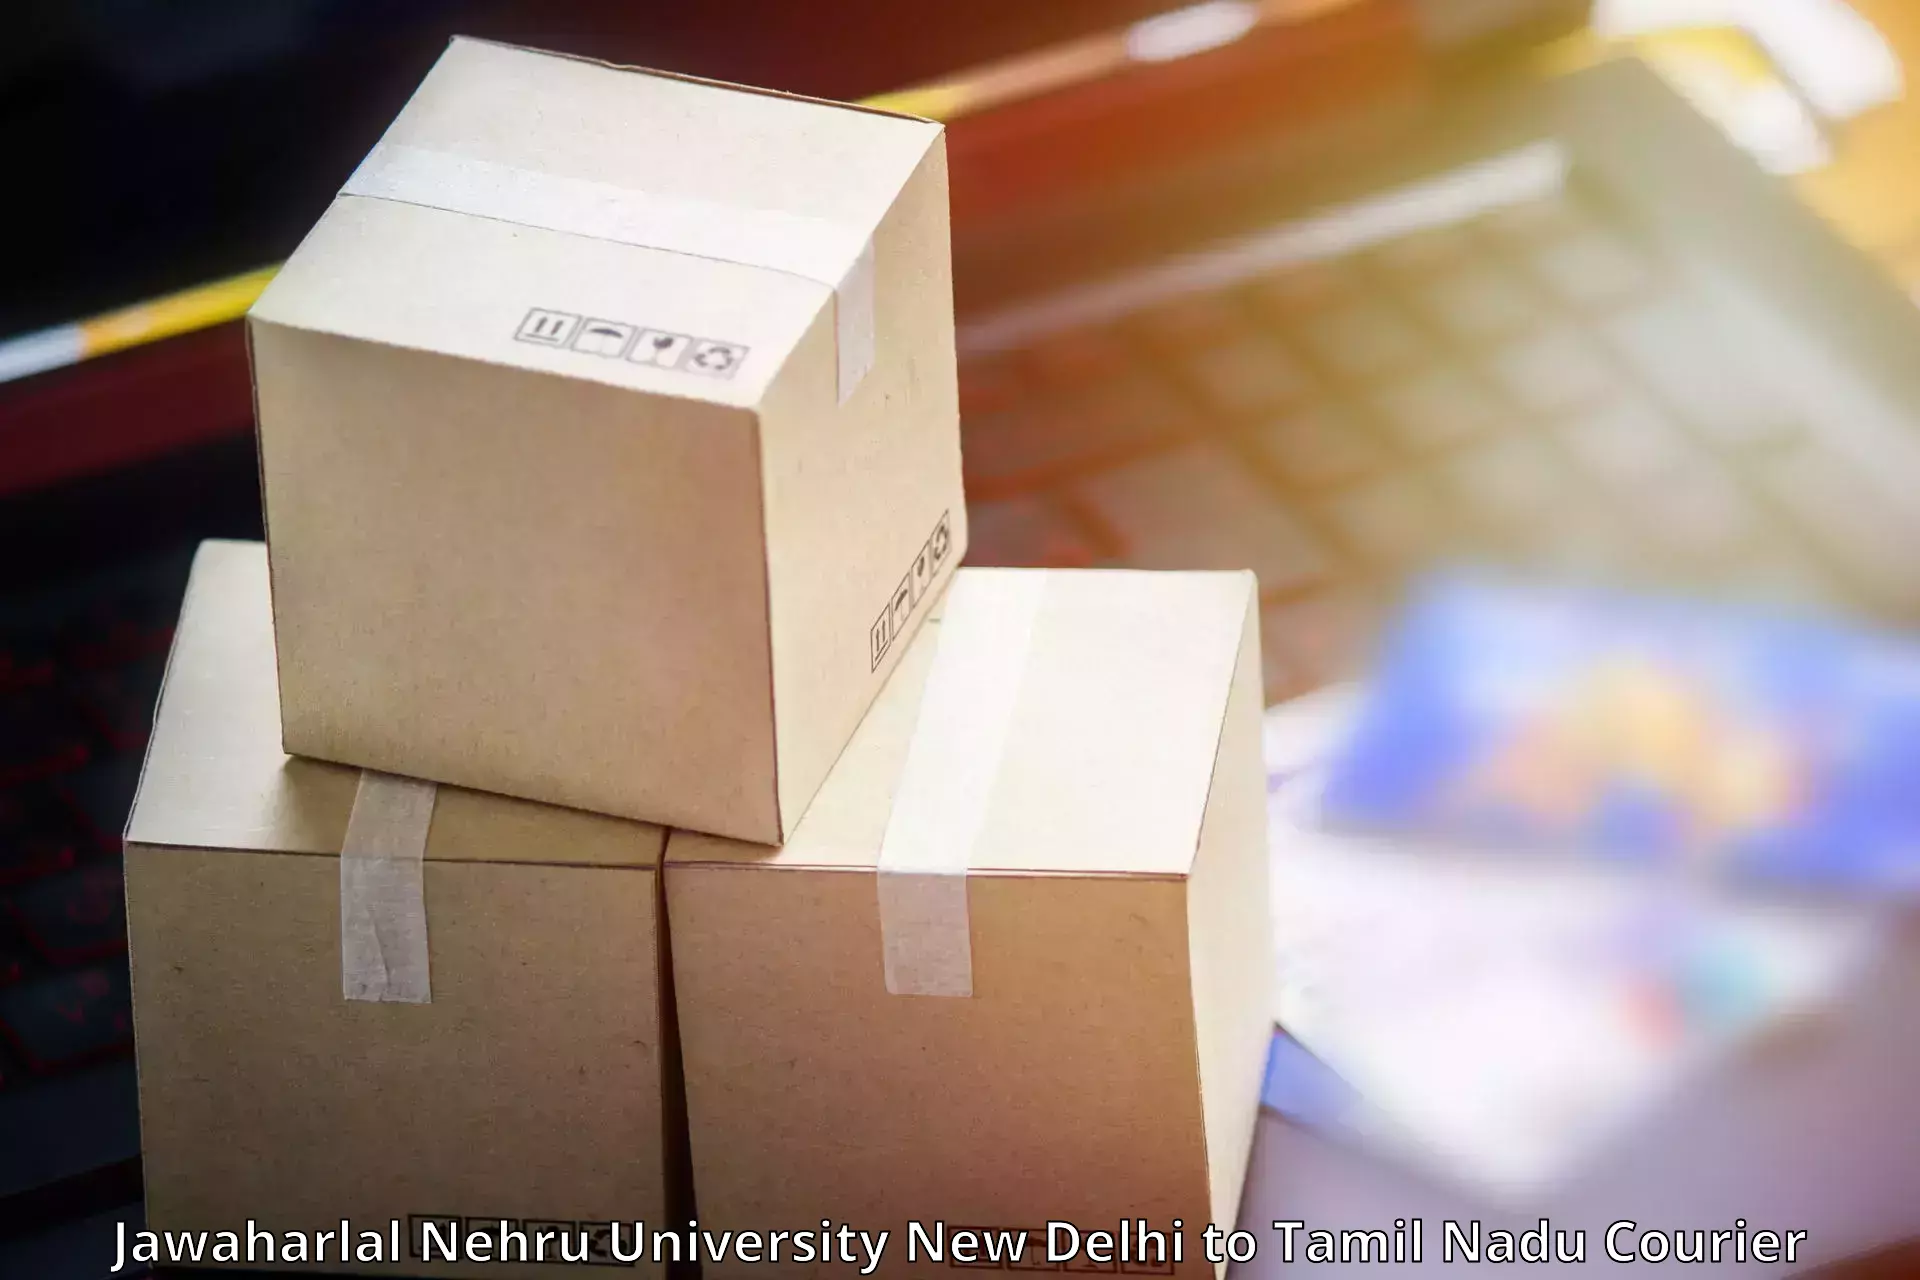 24/7 courier service Jawaharlal Nehru University New Delhi to Amrita Vishwa Vidyapeetham Coimbatore